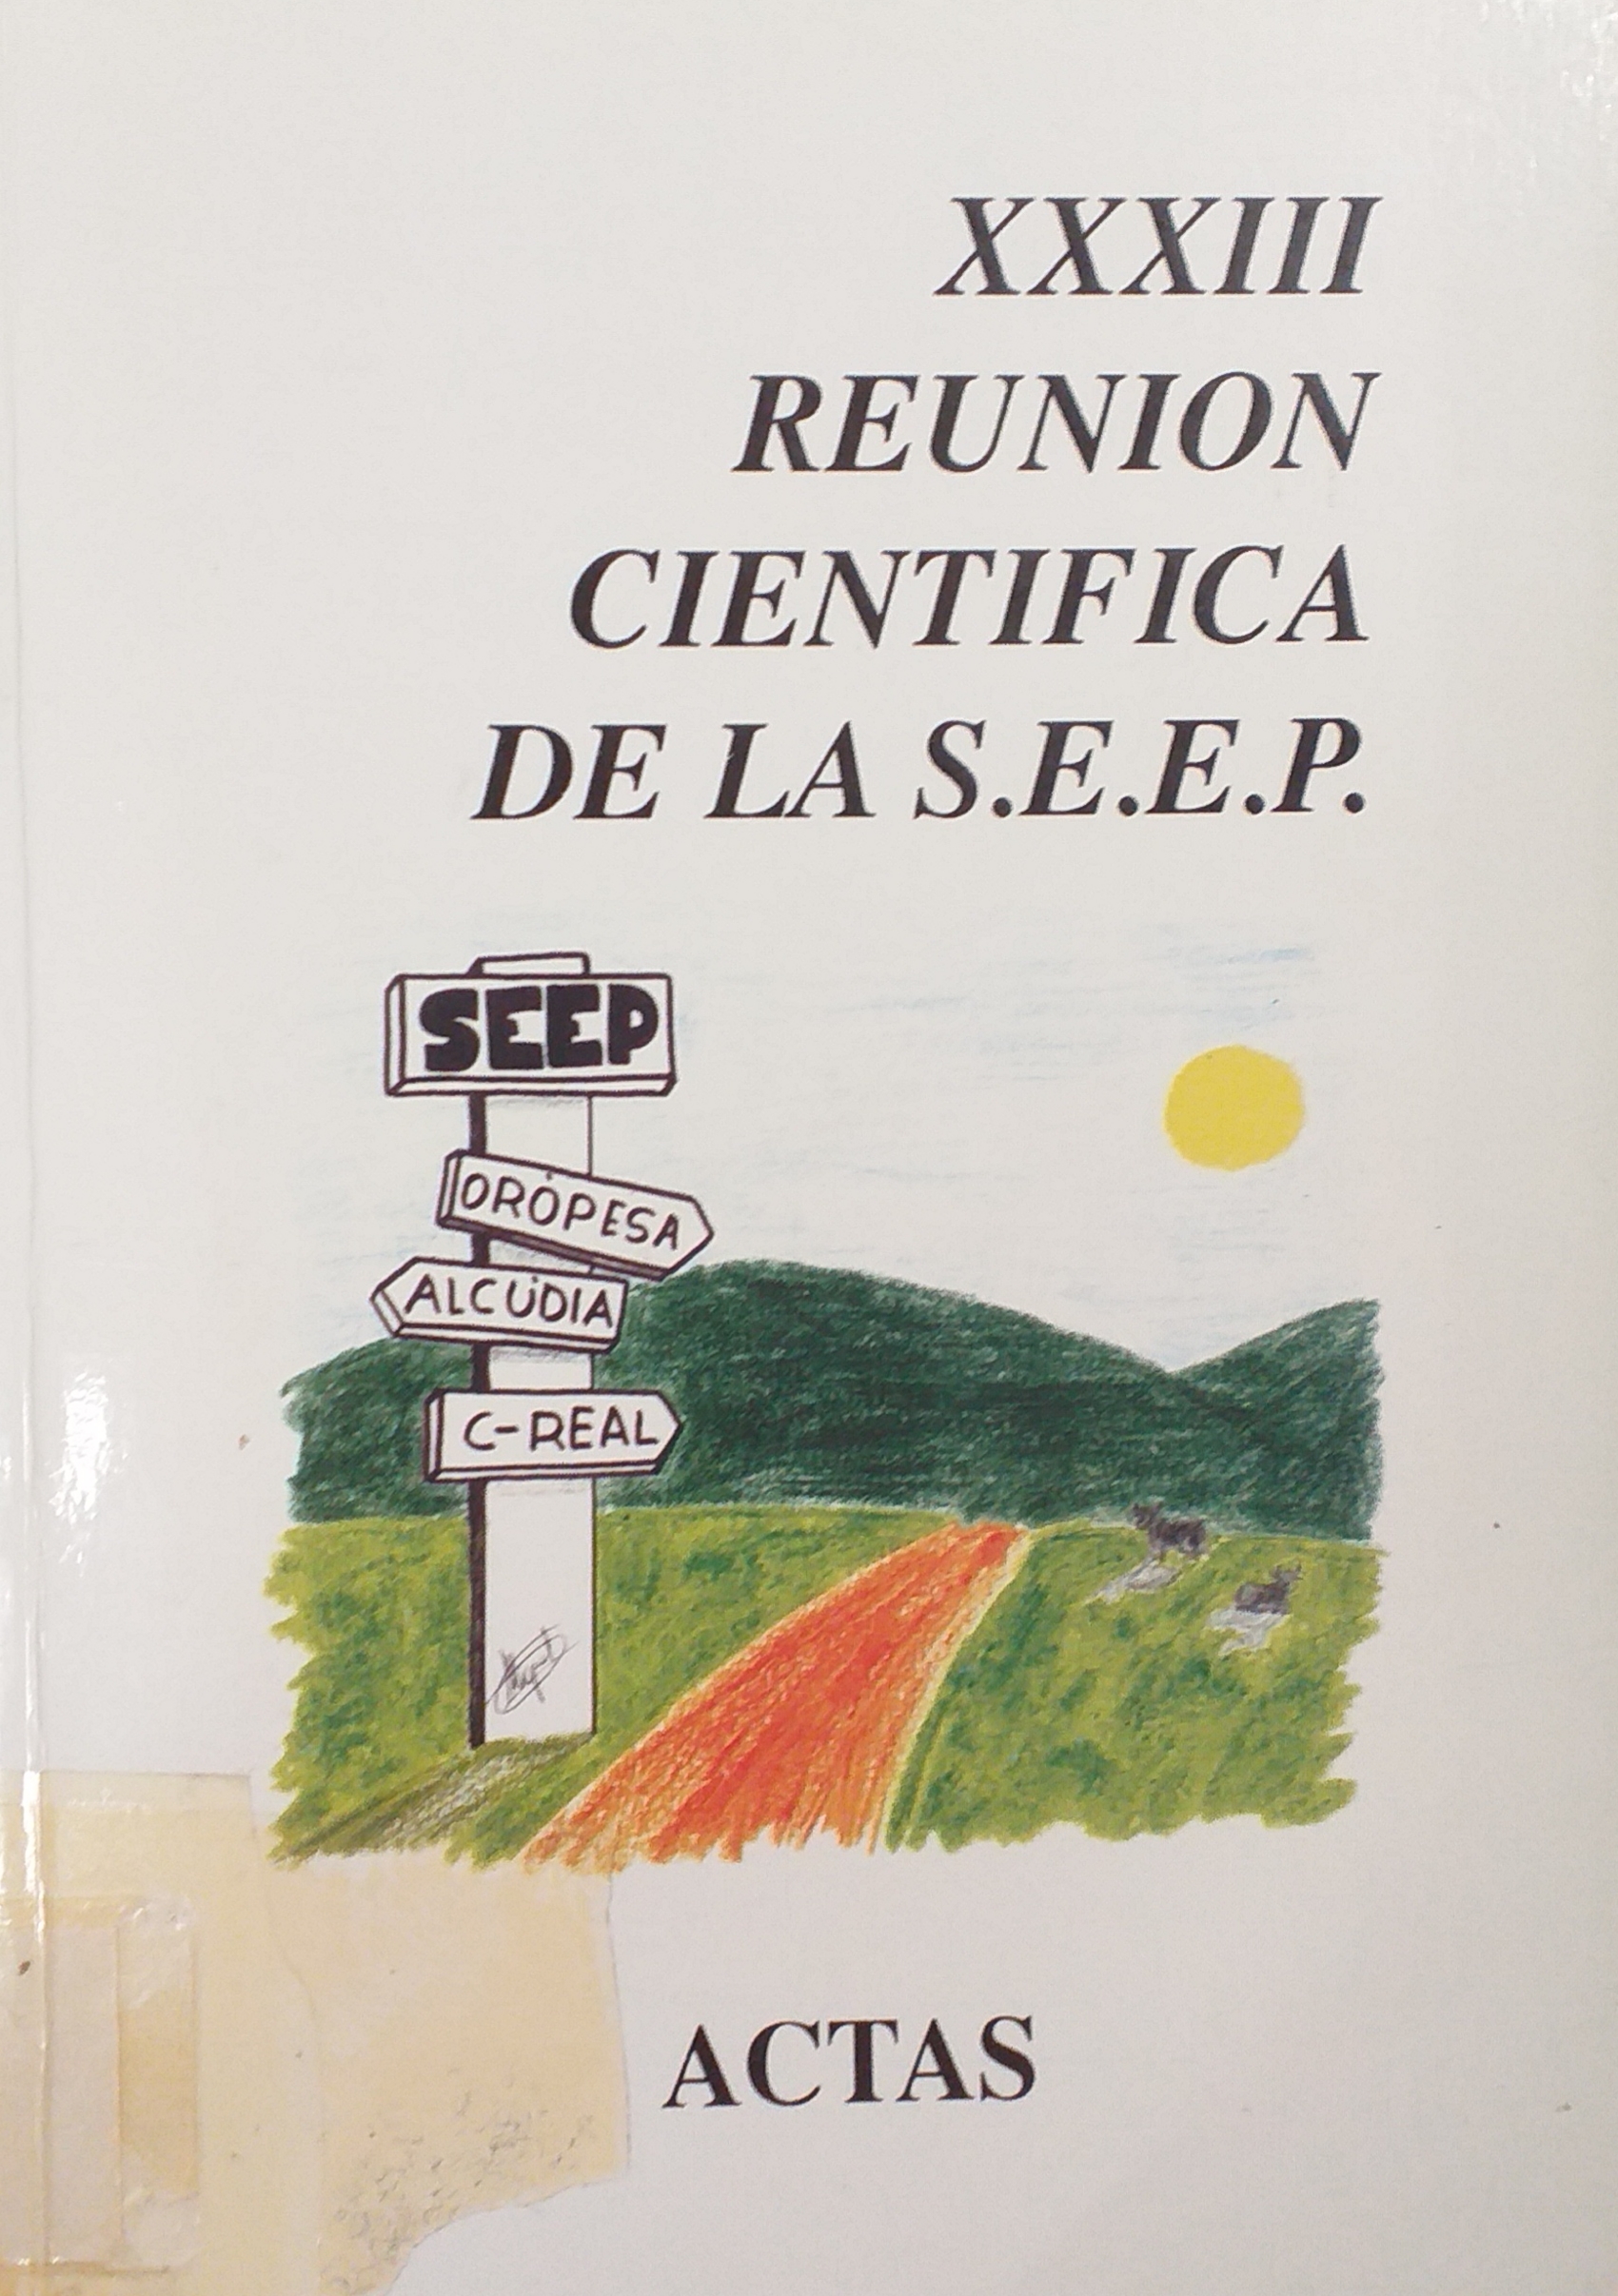 Imagen de portada del libro XXXIII Reunión científica de la S.E.E.P.